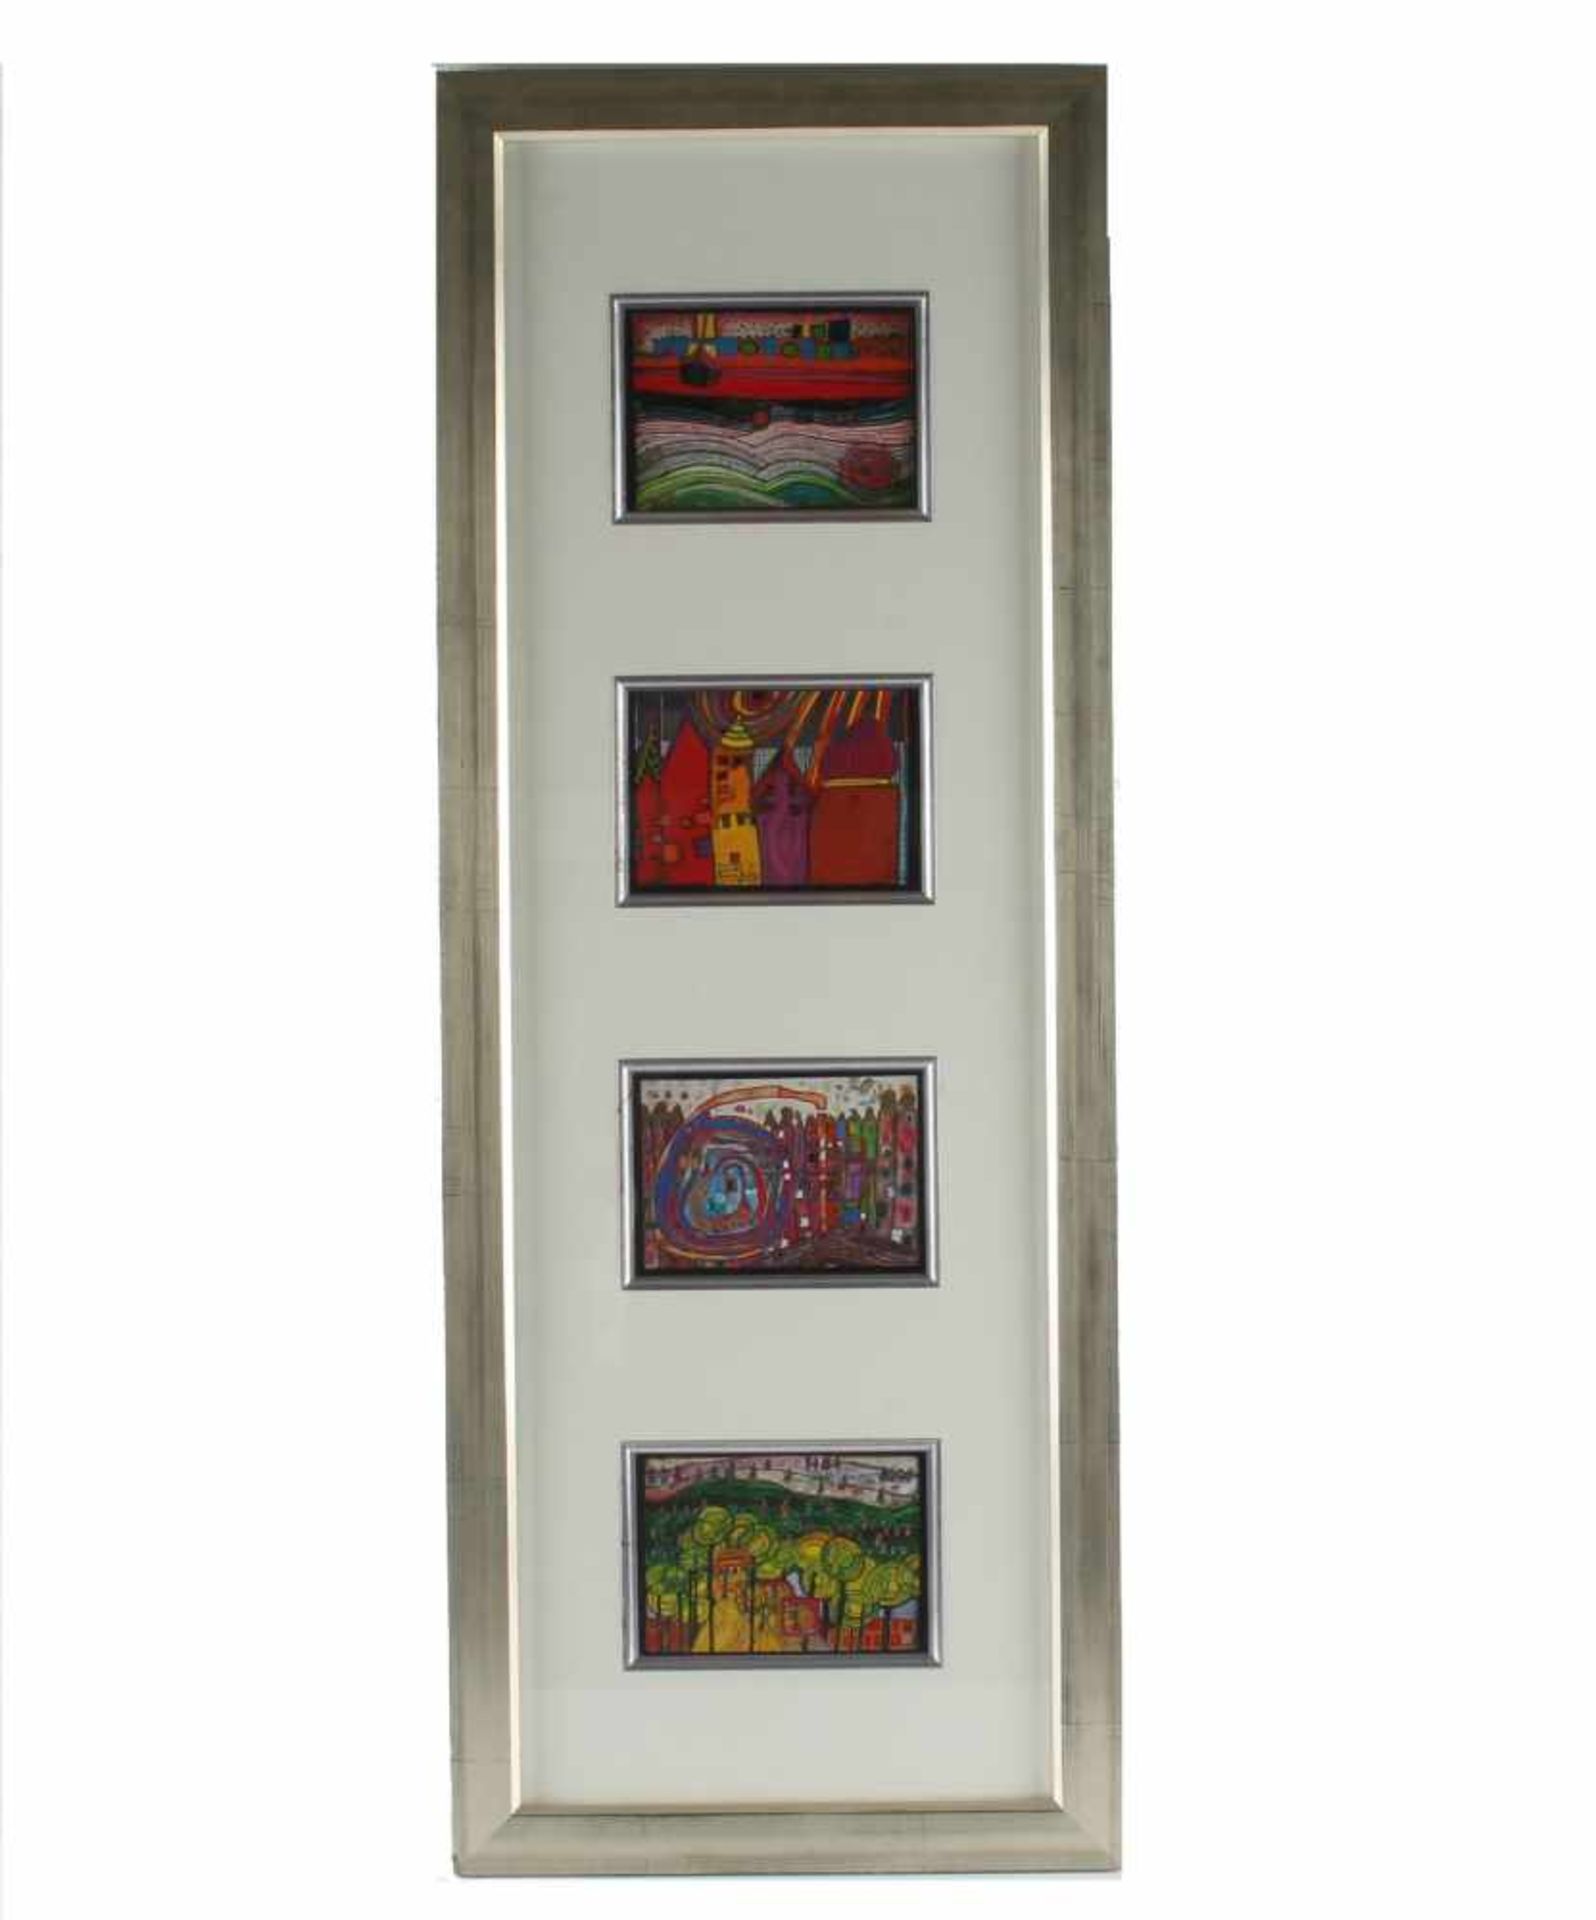 Friedensreich HUNDERTWASSER (1928-2000) - 4 Kunstkarten mit Folienprägung, alle 4 Kunstkarten